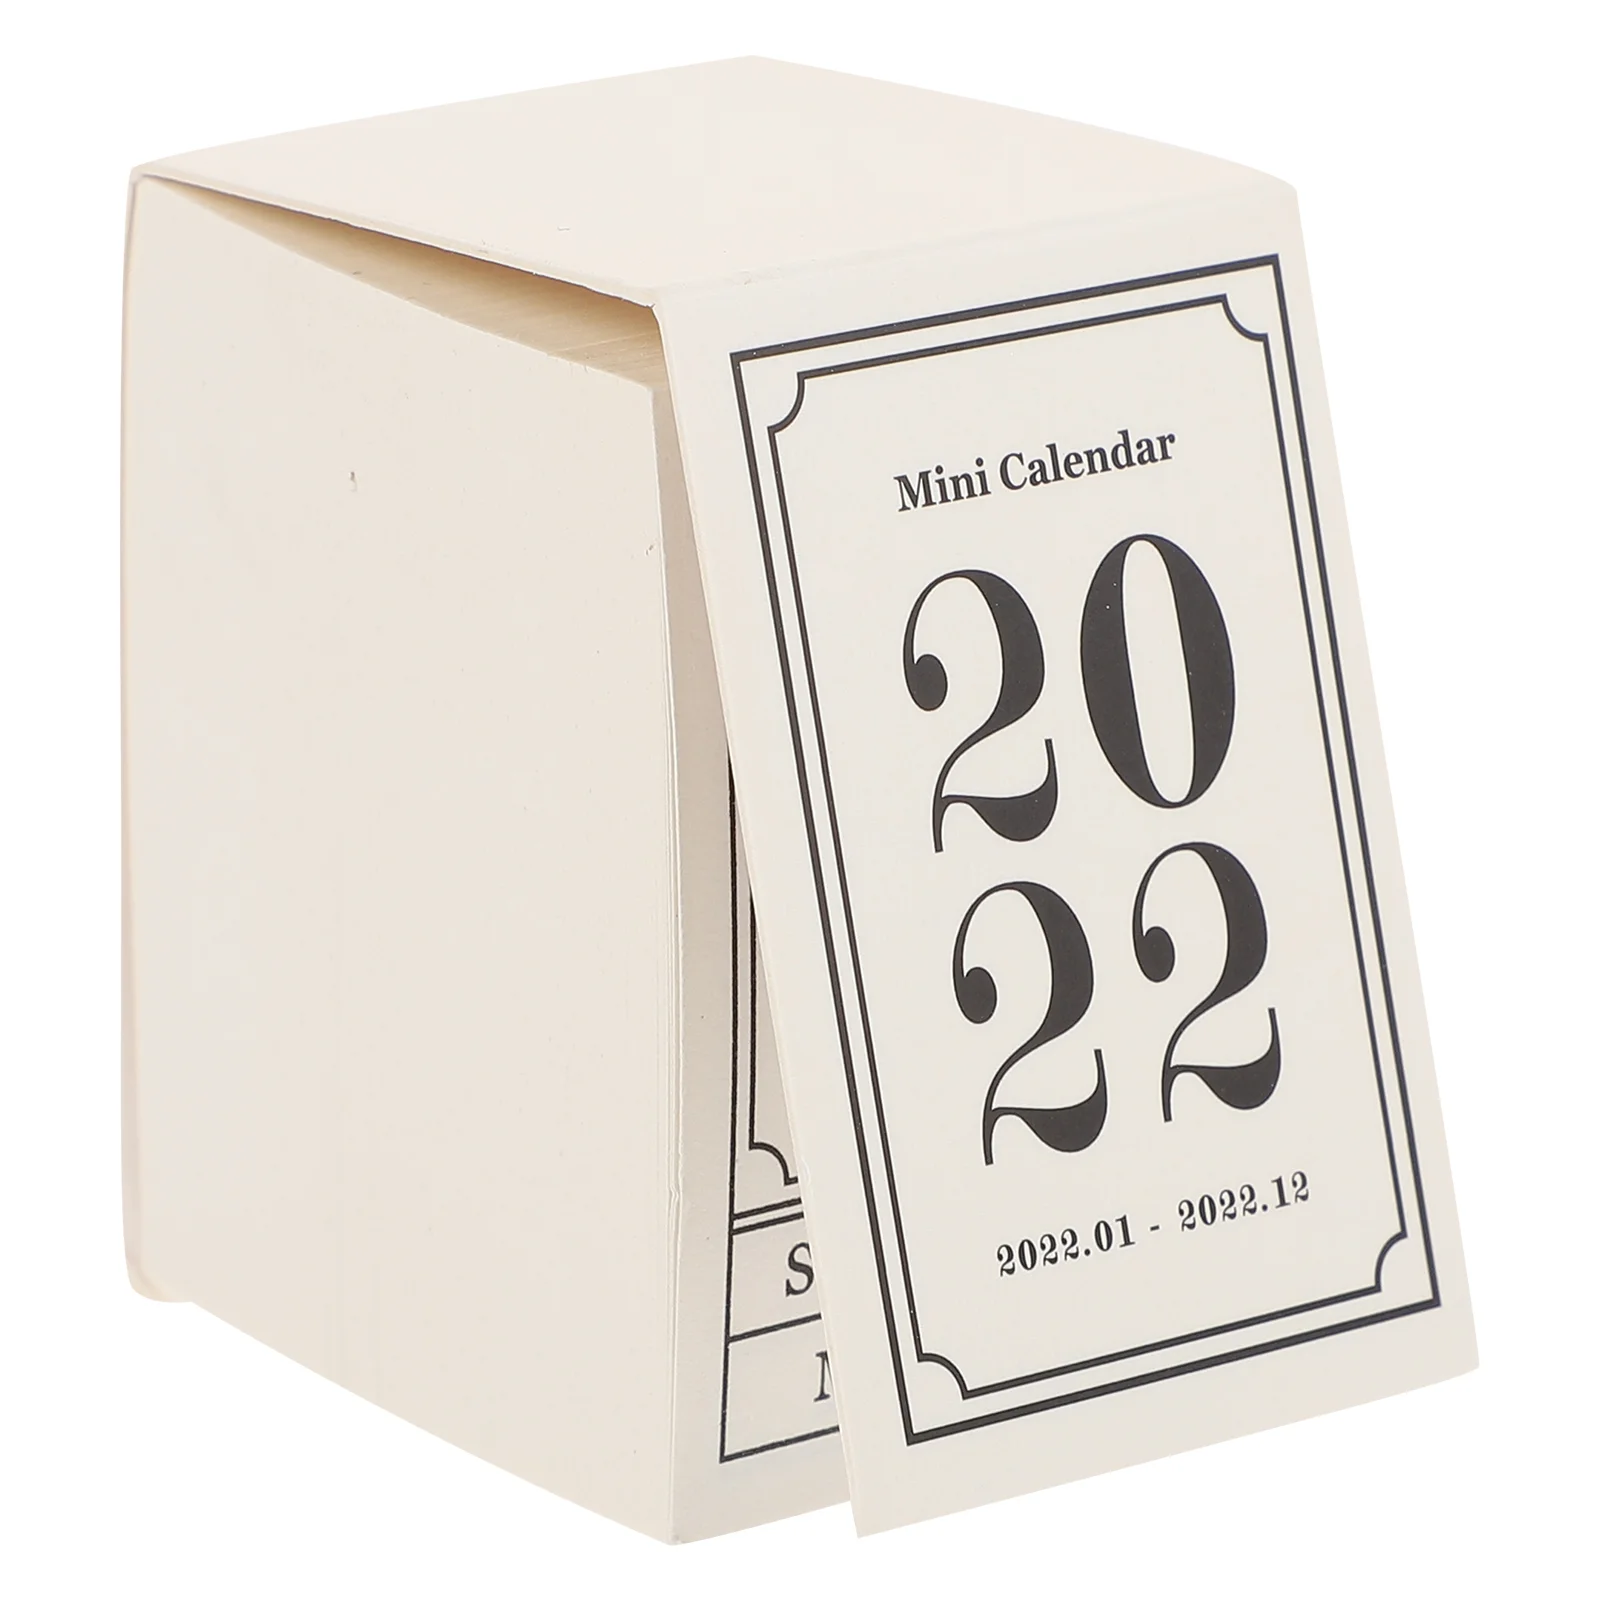 

1 шт. удобный календарь 2022, внутренний календарь 2022, календарь для записей расписания, настольный календарь